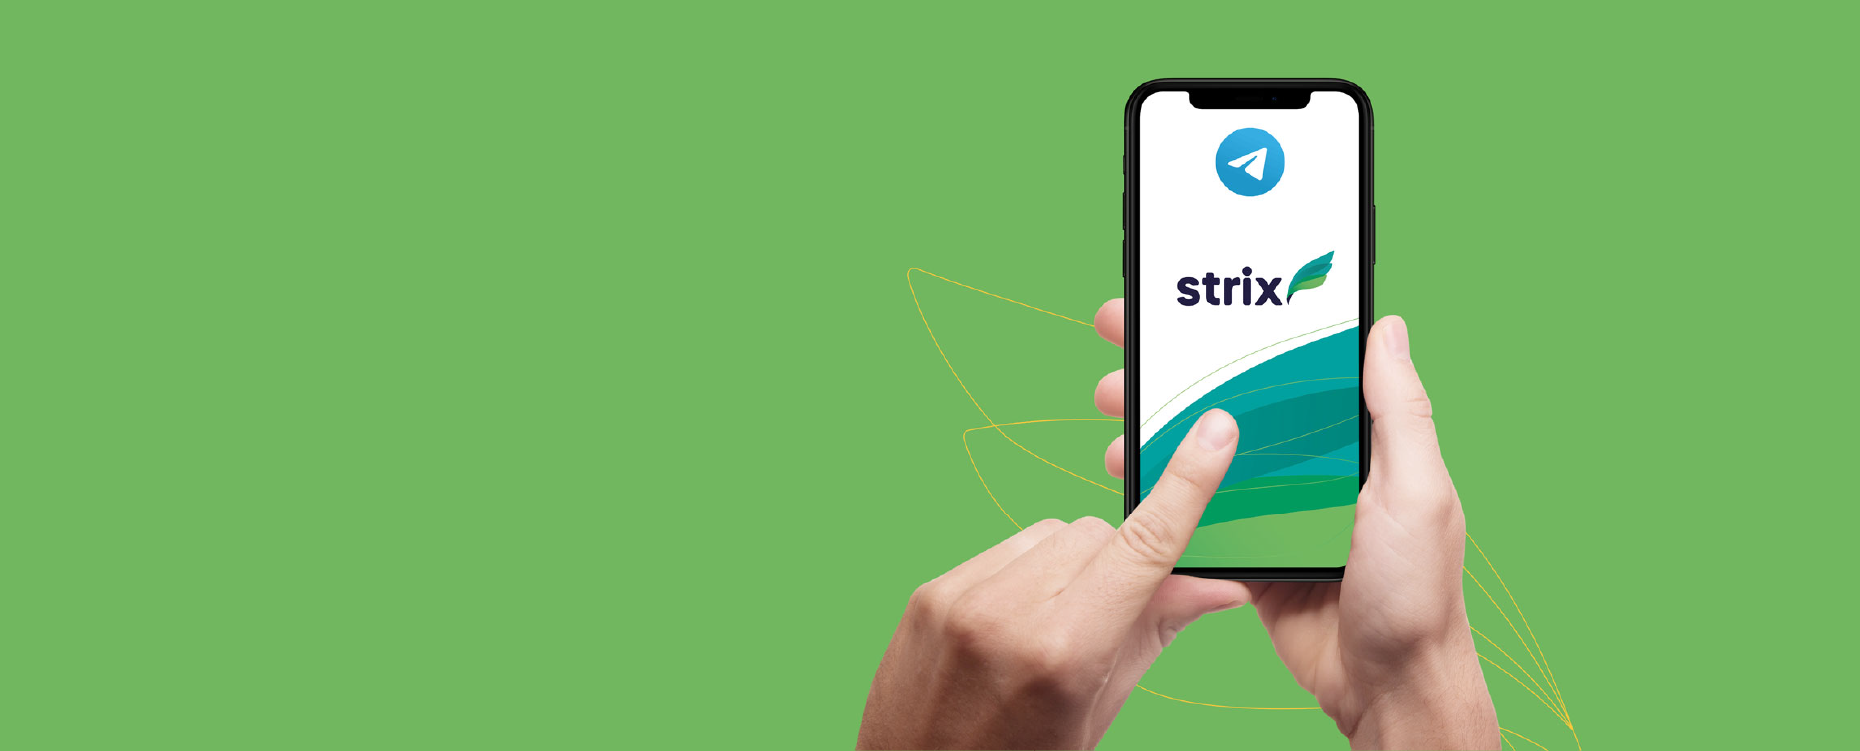 Strix One - Telegram